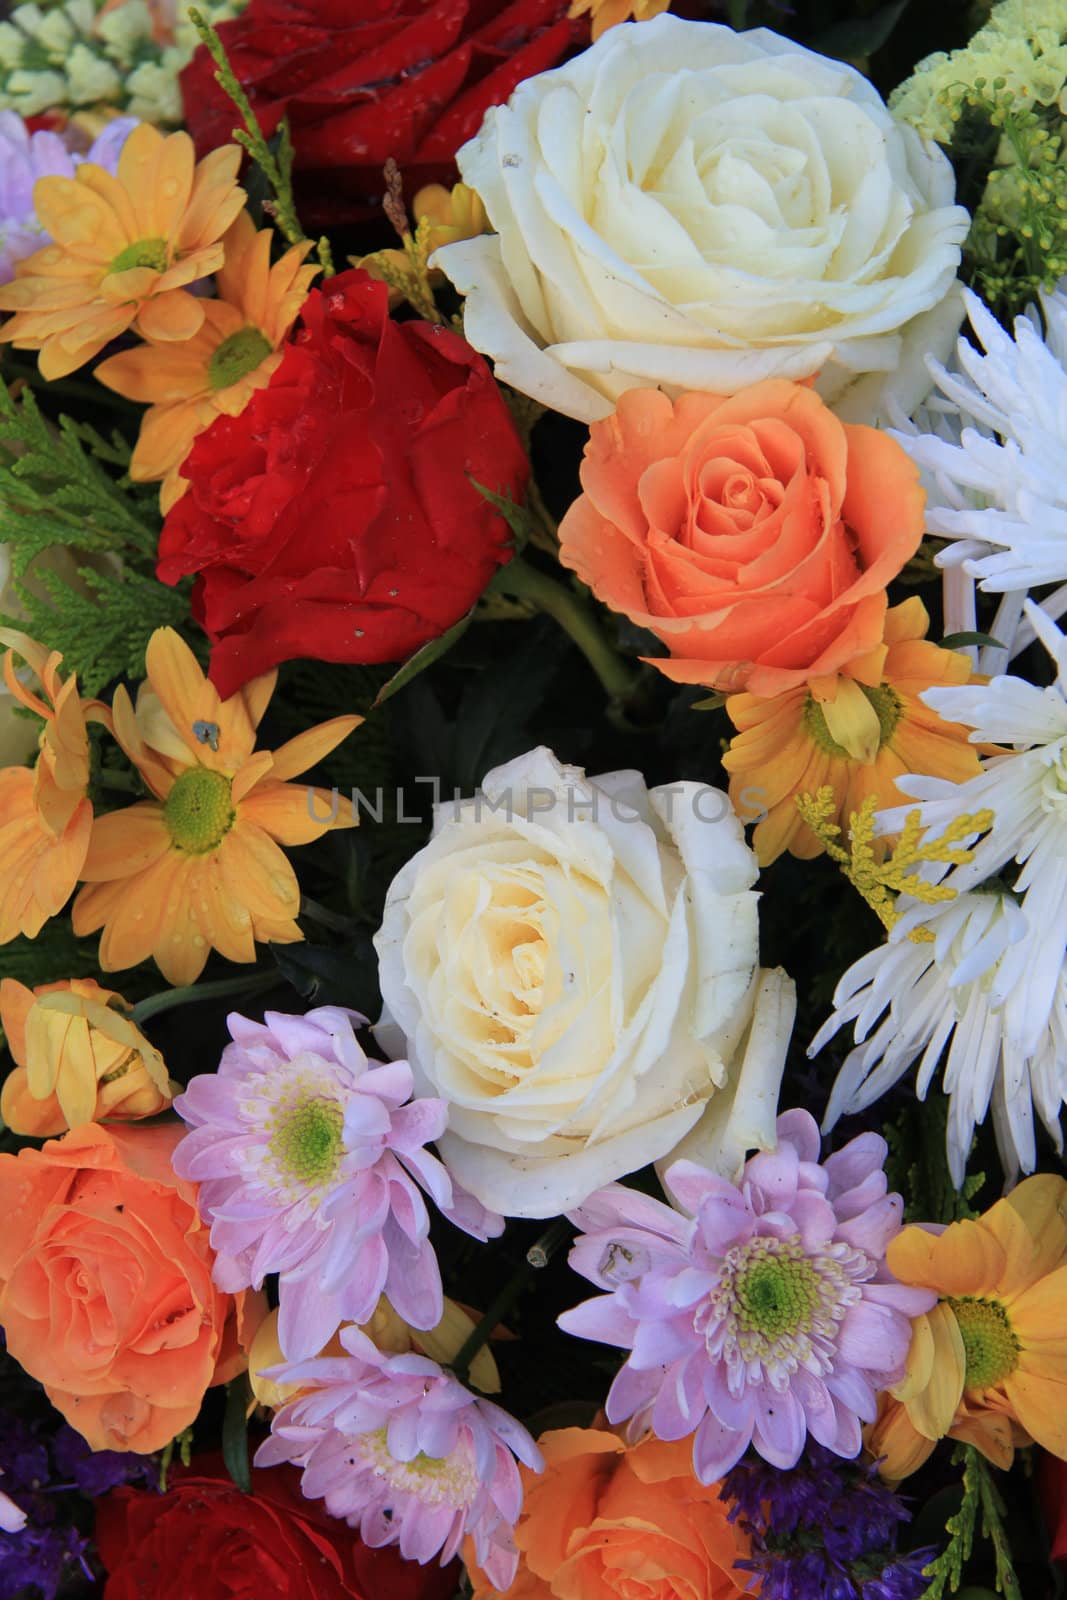 Mixed floral arrangement by studioportosabbia